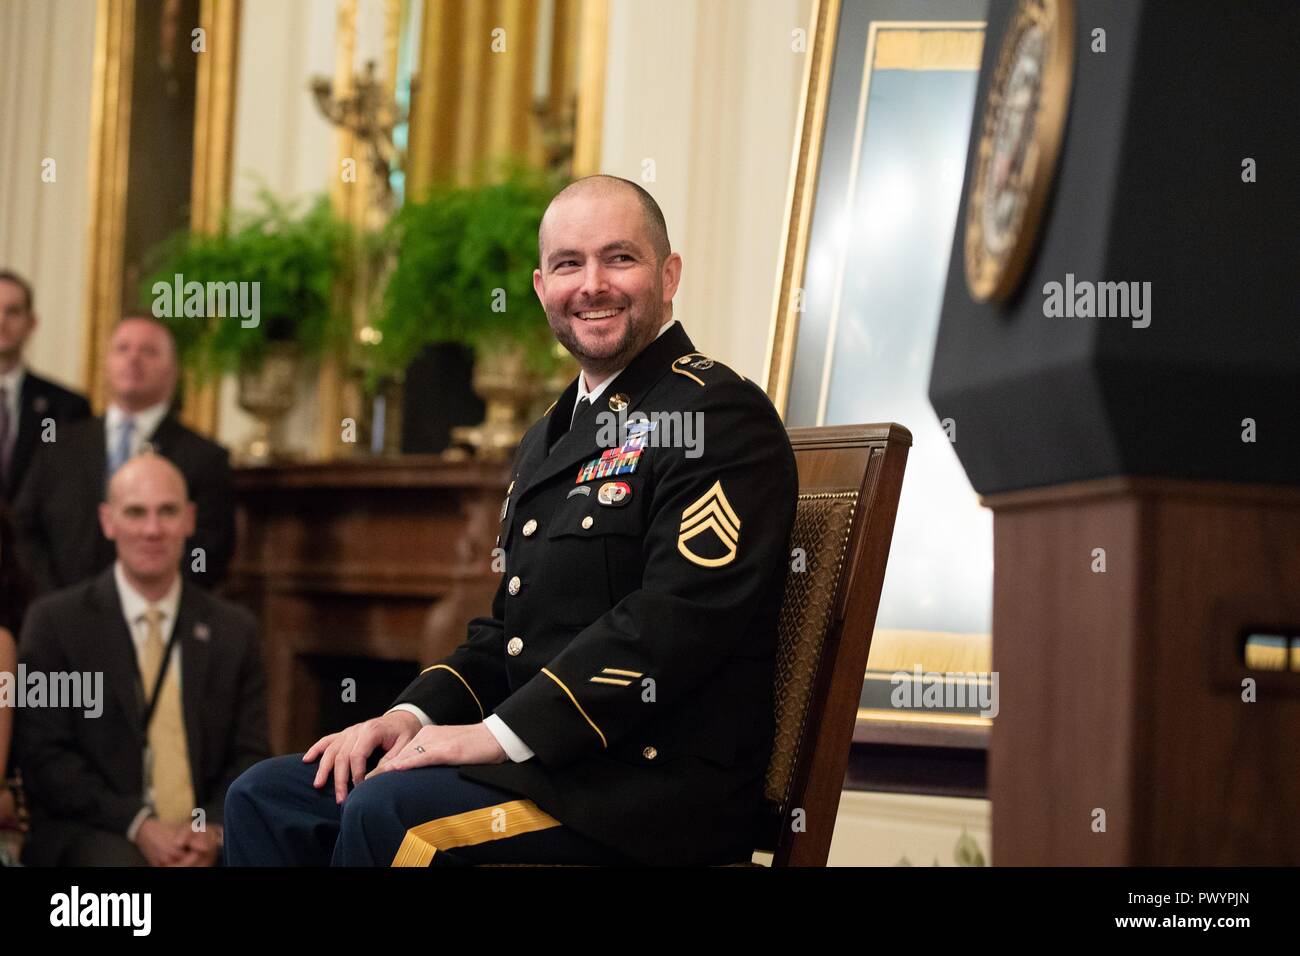 El Sargento del Ejército estadounidense retirado. Ronald J. Shurer II risas durante la ceremonia de entrega de la Medalla de Honor en el East Room de la Casa Blanca, el 1 de octubre de 2018 en Washington, DC. Sharer recibió la medalla de heroísmo durante la batalla del shok Valle en Afganistán. Foto de stock